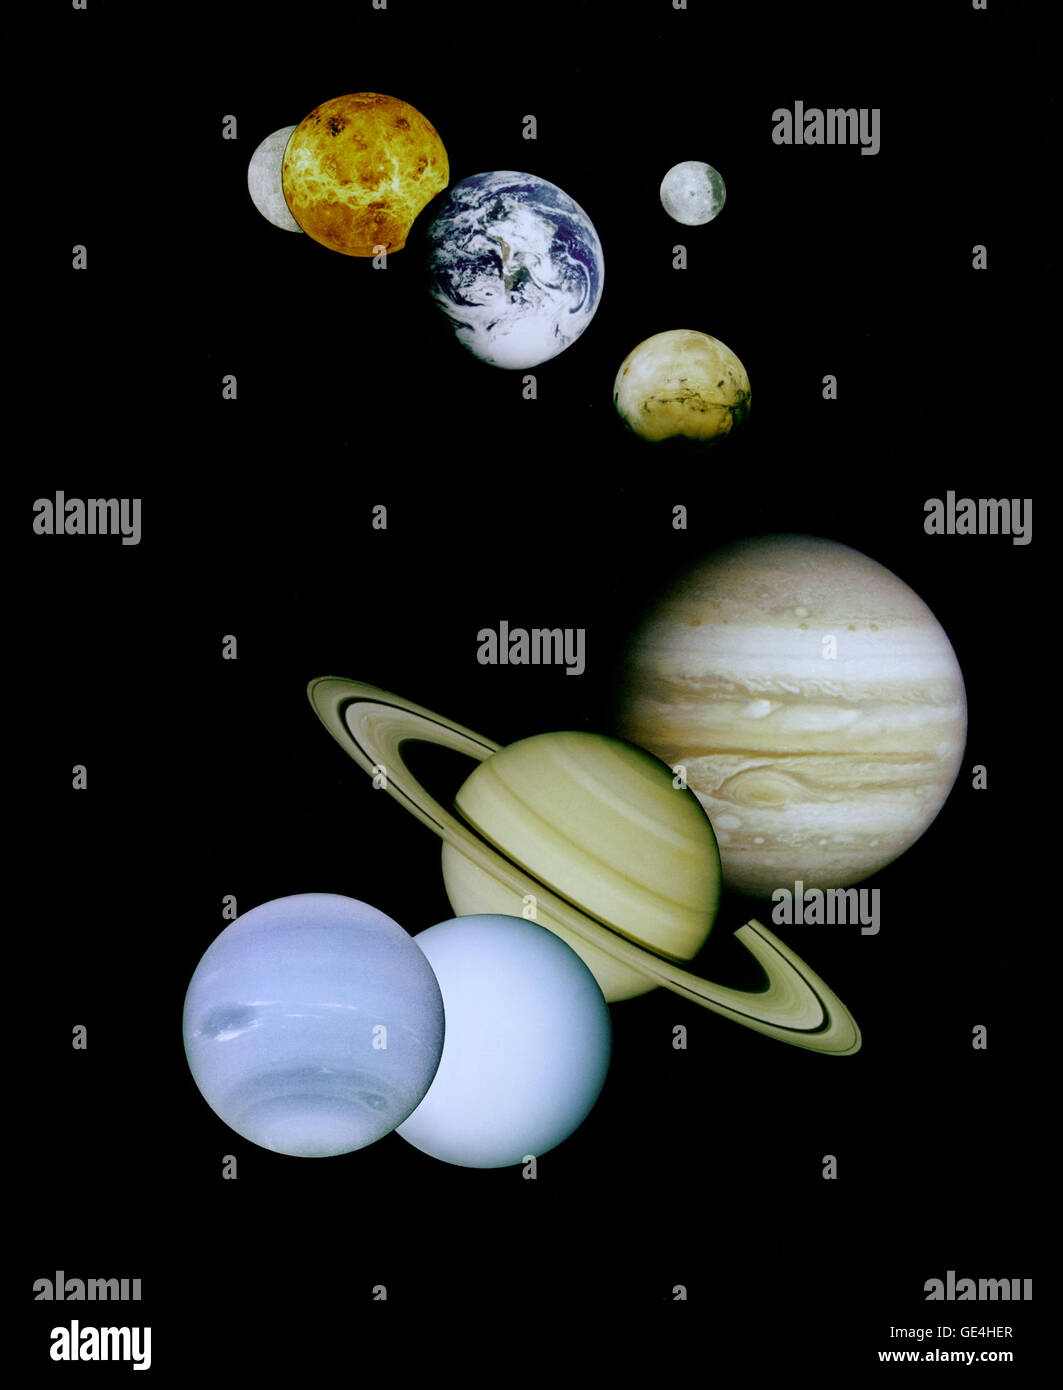 Il s'agit d'un montage d'images planétaires prises par les satellites gérés par le Jet Propulsion Laboratory à Pasadena, CA. Inclus sont (de haut en bas) des images de Mercure, Vénus, la terre (et la lune), Mars, Jupiter, Saturne, Uranus et Neptune. L'engin spatial responsable de ces images sont comme suit : l'image de mercure a été prise par Mariner 10, l'image de Vénus par Magellan, le droit de la Terre par Galileo, l'image de Mars par Viking, et le Jupiter, Saturne, Uranus et Neptune images par Voyager. Pluton n'est pas indiquée car aucune sonde n'a pas encore visité. Les planètes intérieures (Mercure, Vénus, la terre, la Lune et Mars) Banque D'Images